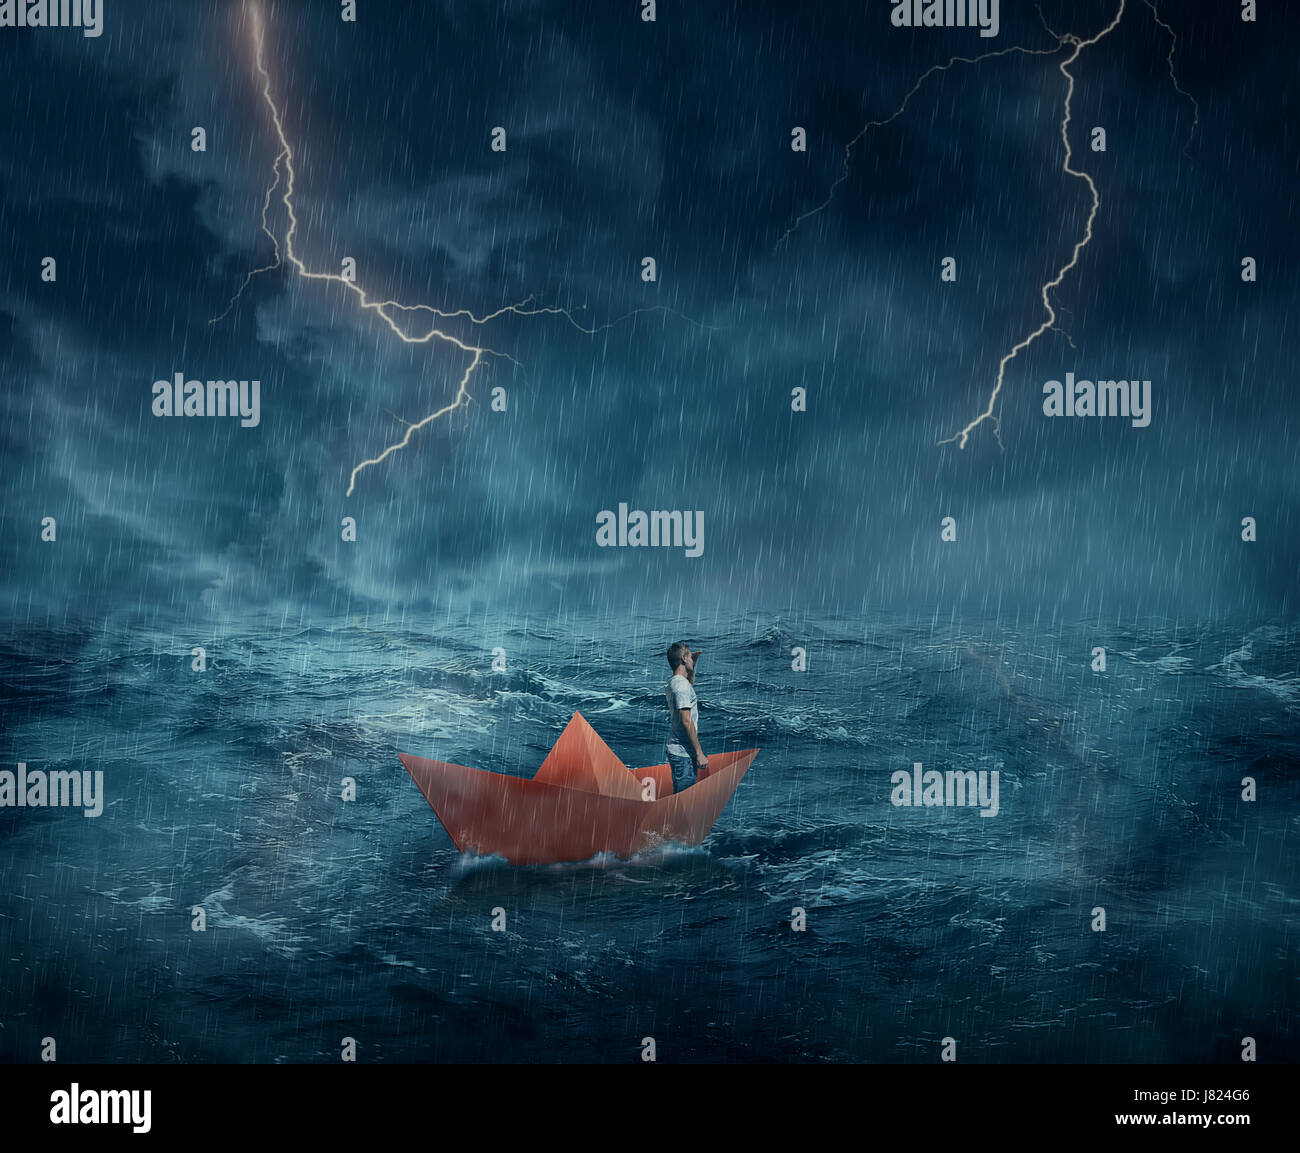 Kleiner Junge in einem orangefarbenen Papier Boot Segel verloren im Meer, in einer stürmischen Nacht mit Blitze am Himmel. Abenteuer und Reise-Konzept. Stockfoto